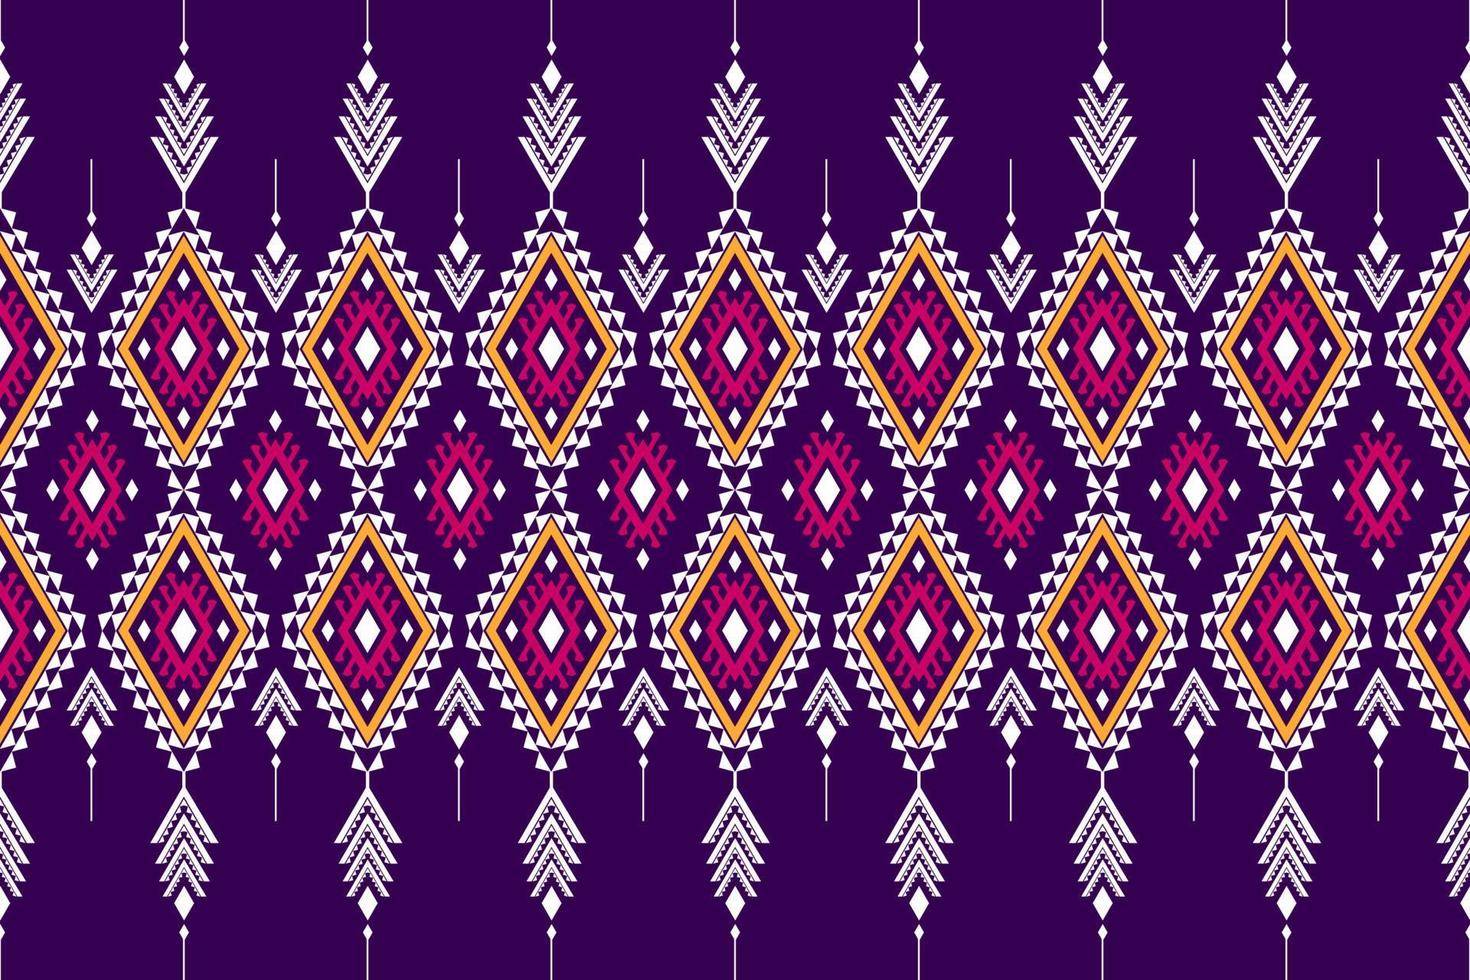 patrón geométrico étnico sin fisuras tradicional. estampado de adornos étnicos aztecas. estilo de patrón tribal. vector